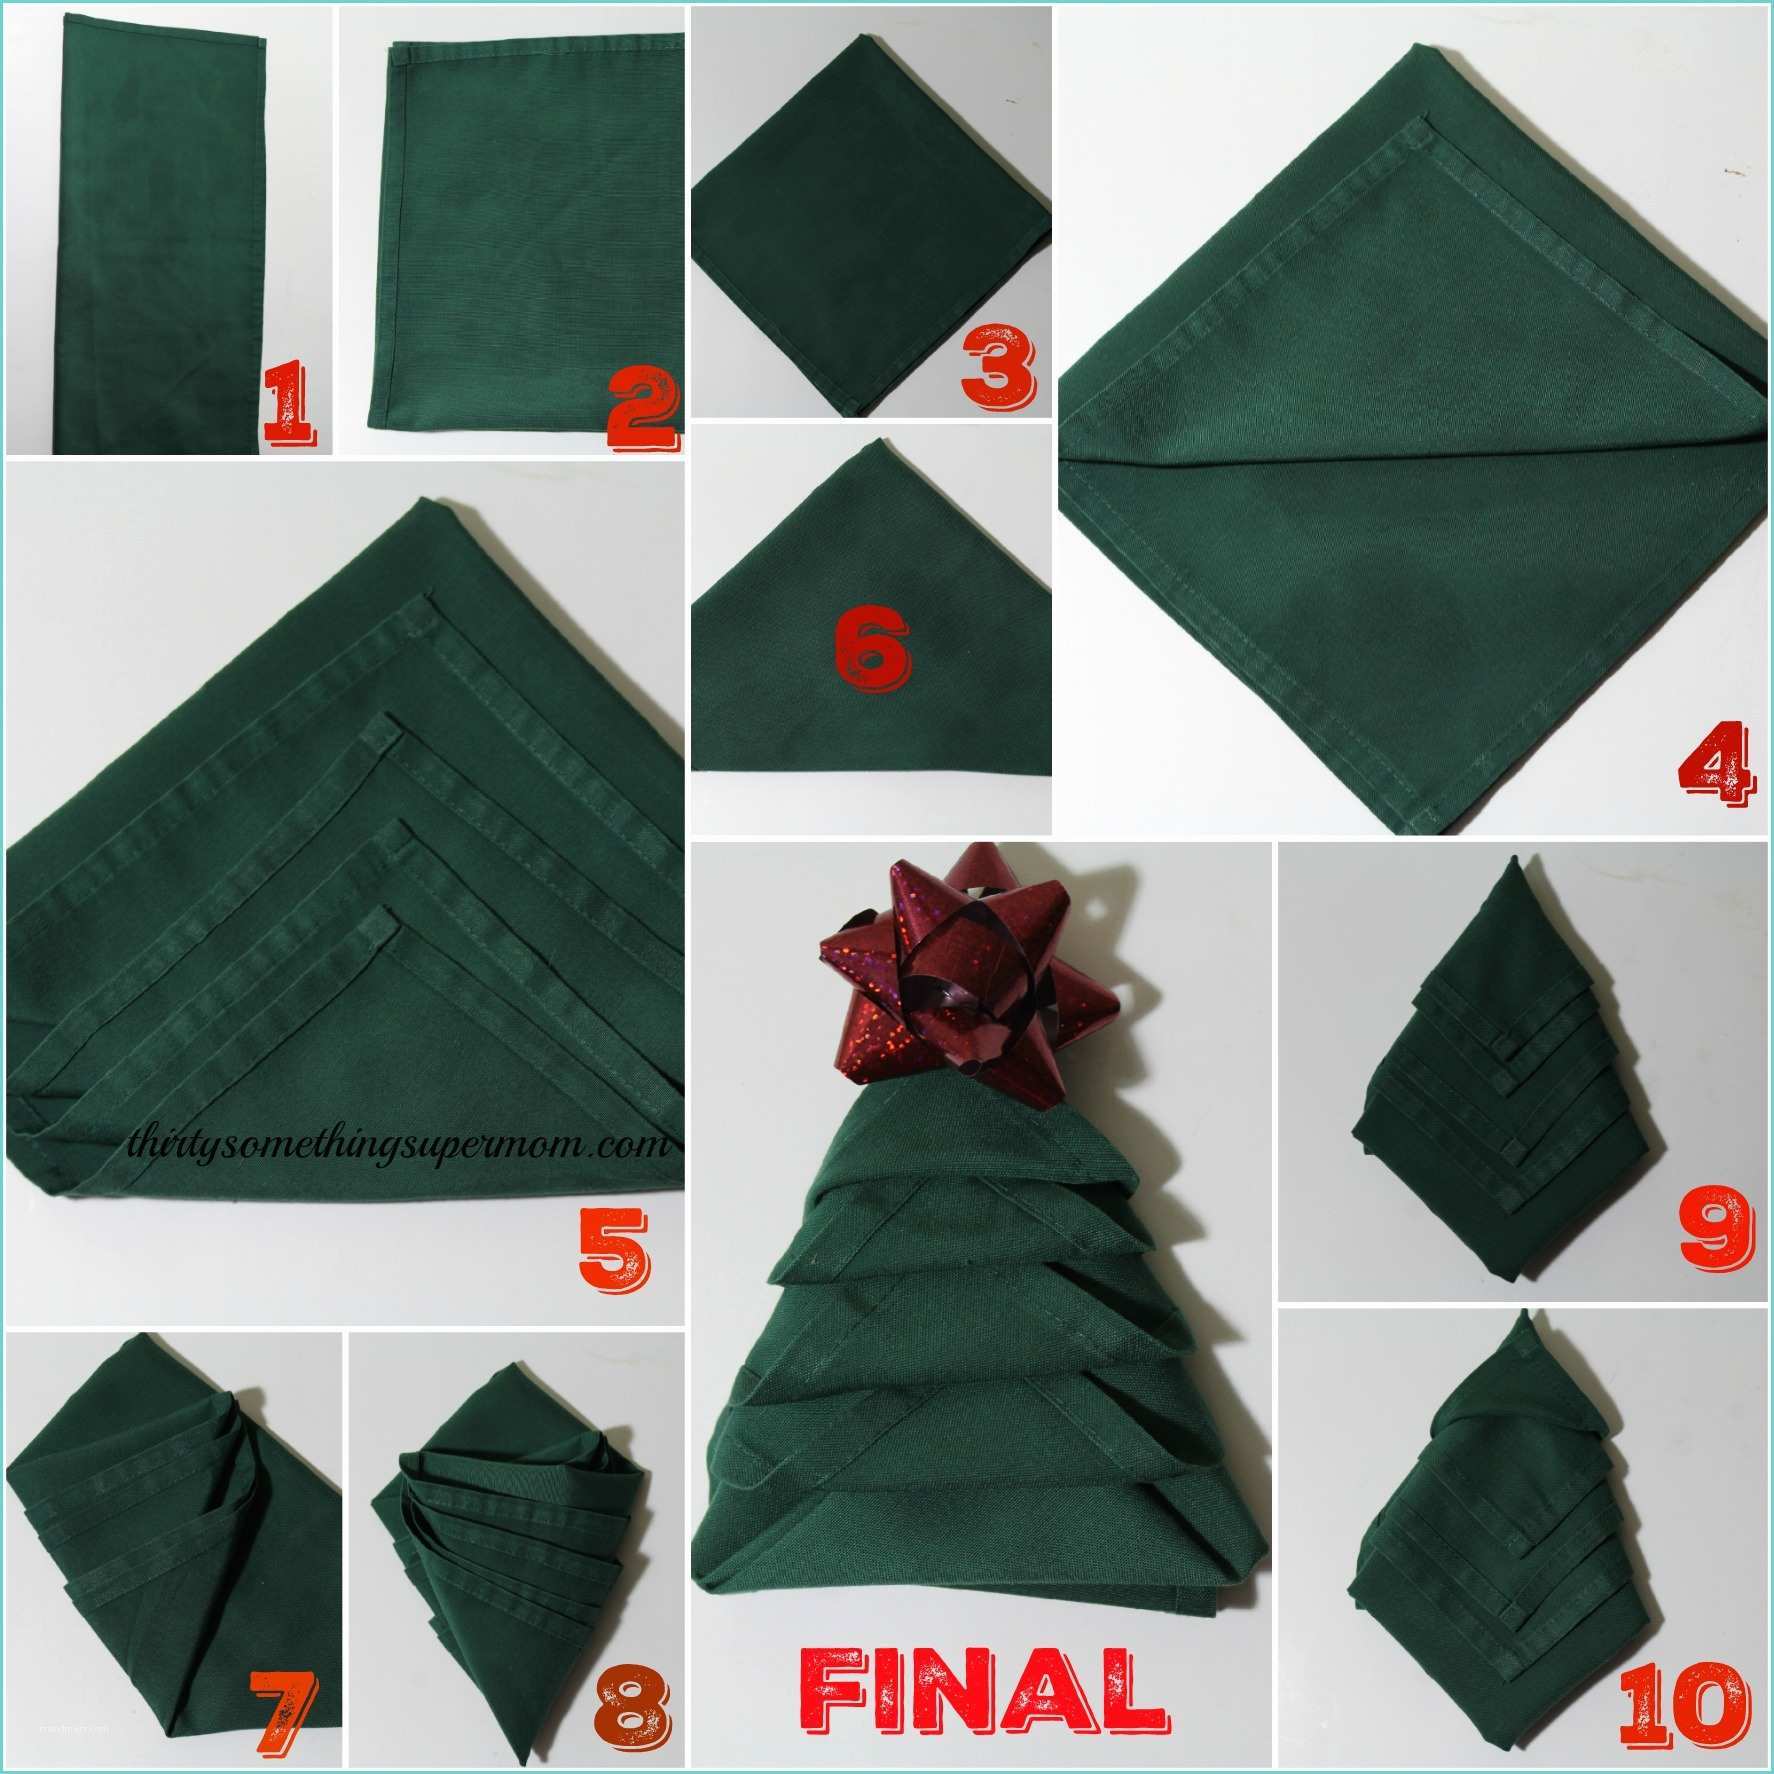 Pliage De Serviette Pour Noel 2 How to Fold Napkins Into Christmas Trees